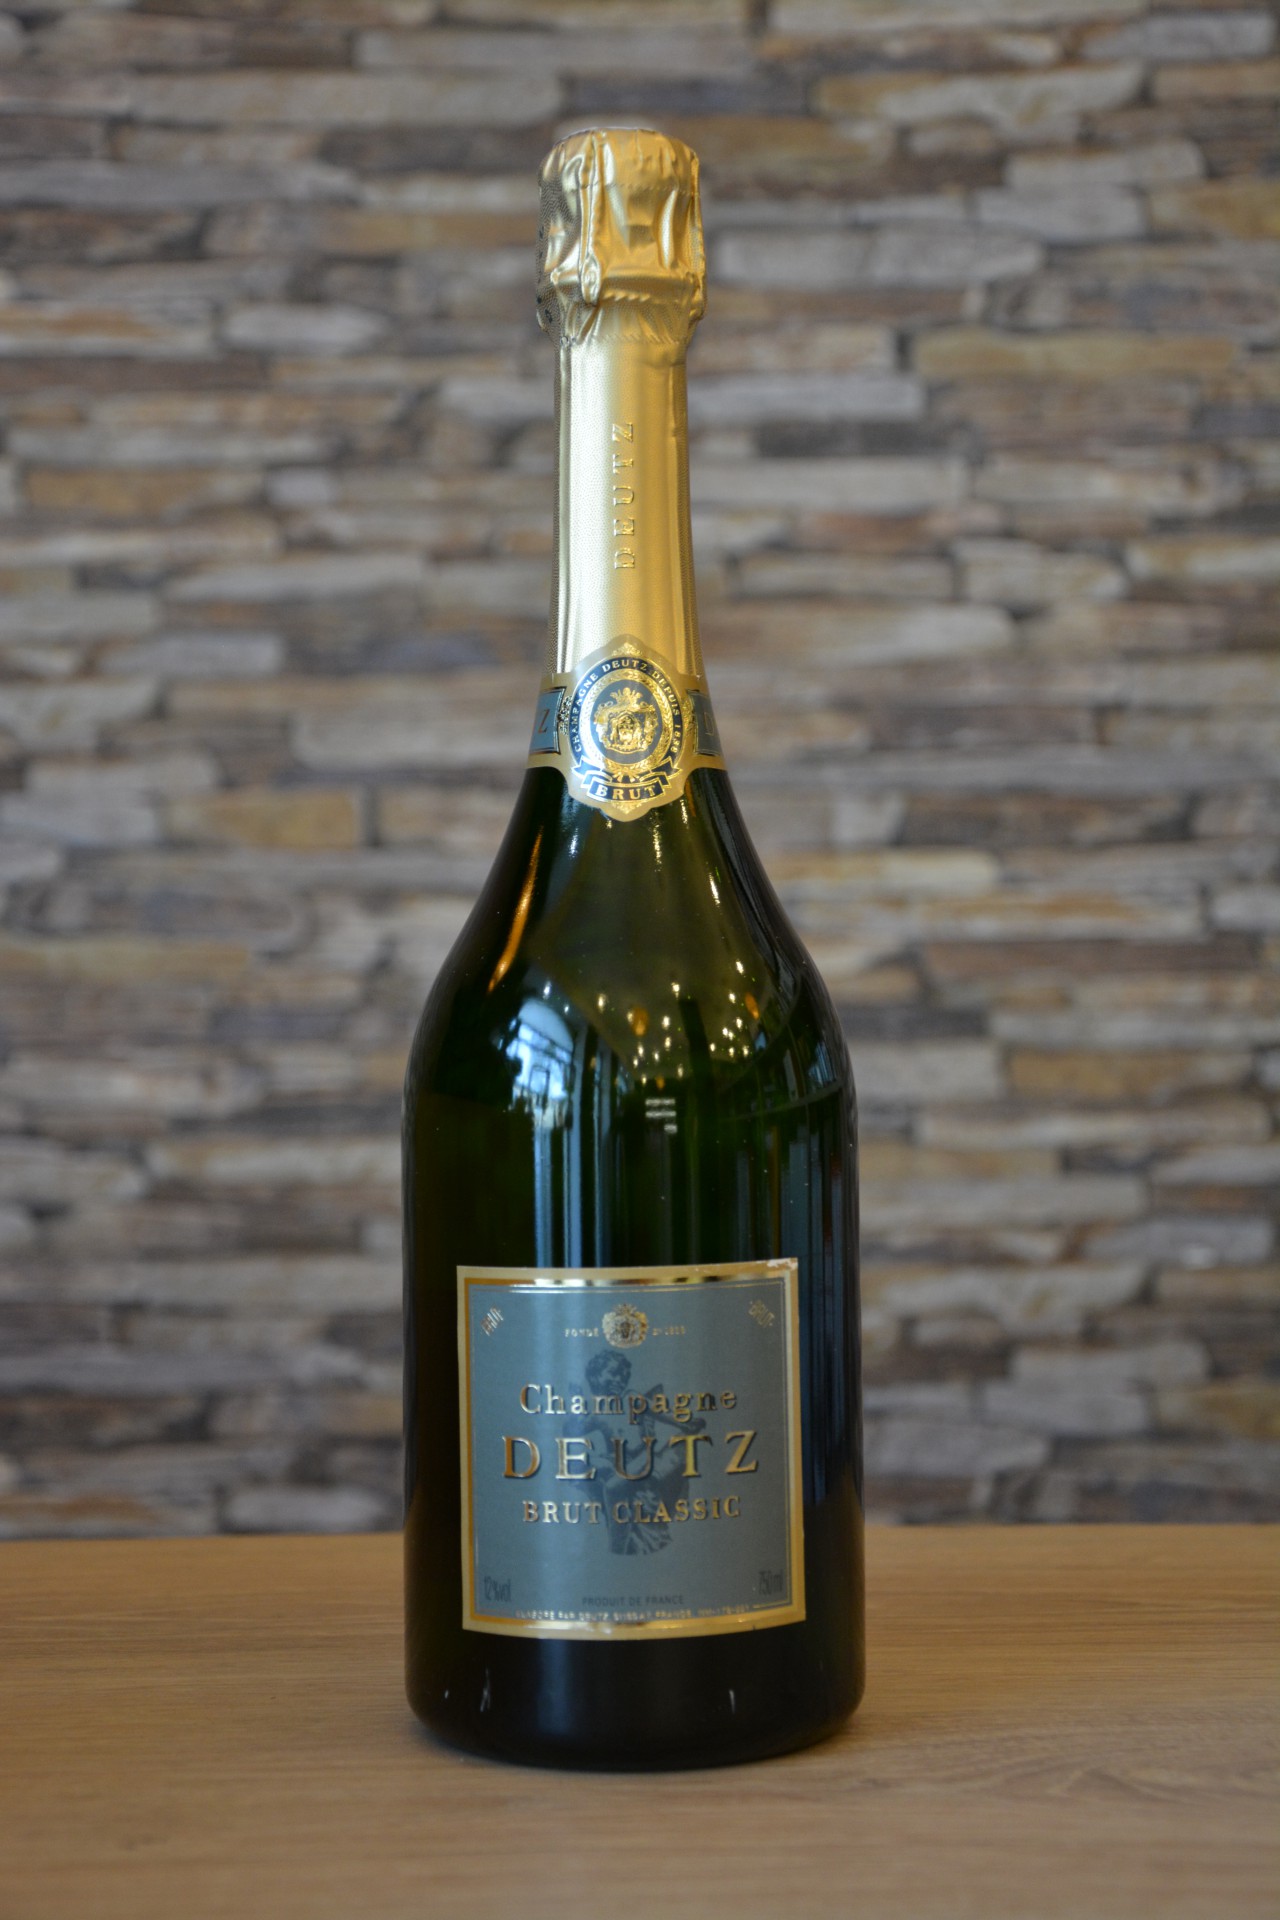 Bouteille de champagne Deutz brut classic (75cl)